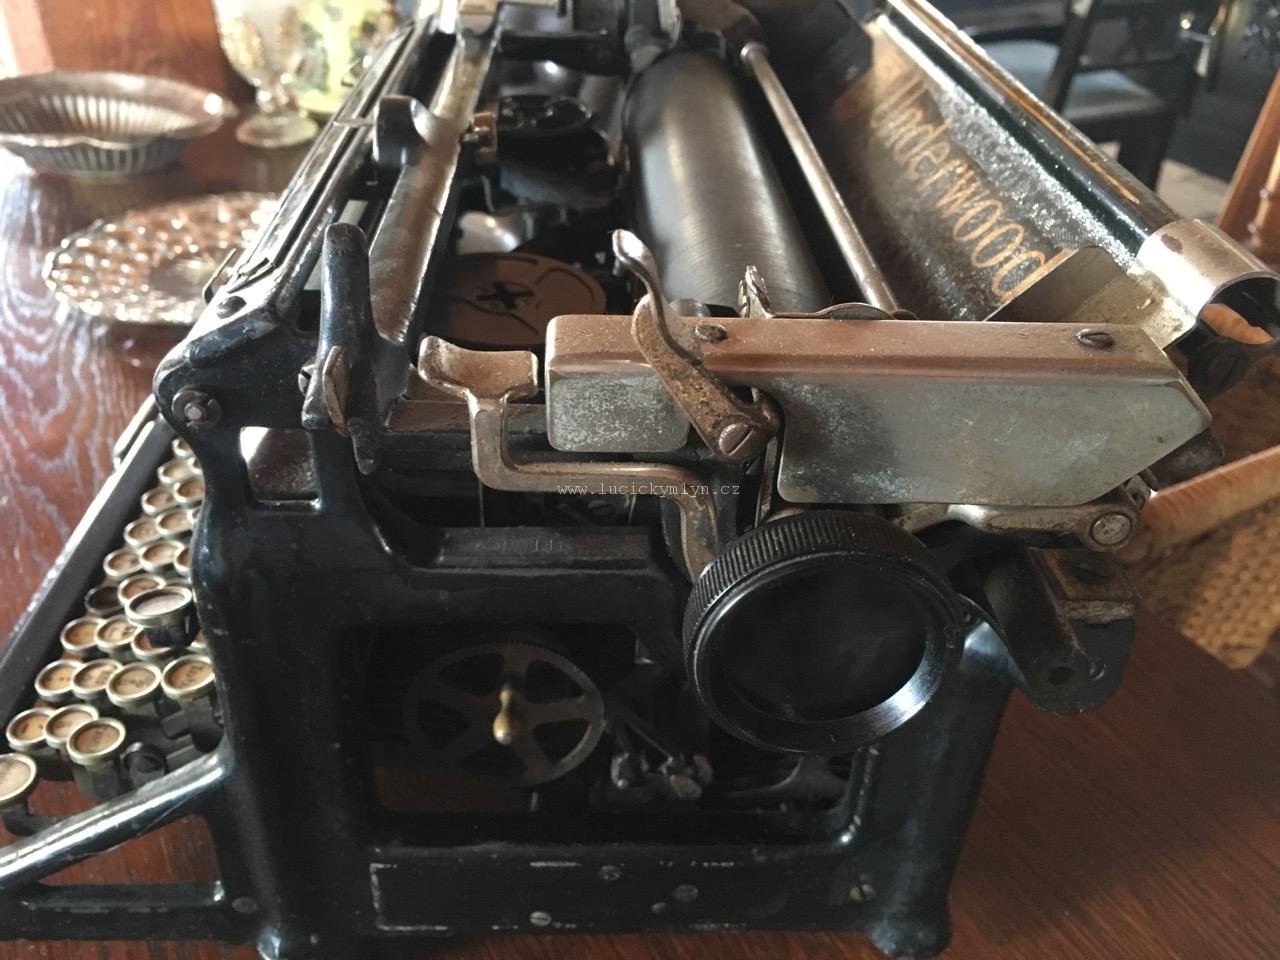 Historický psací stroj značky Underwood